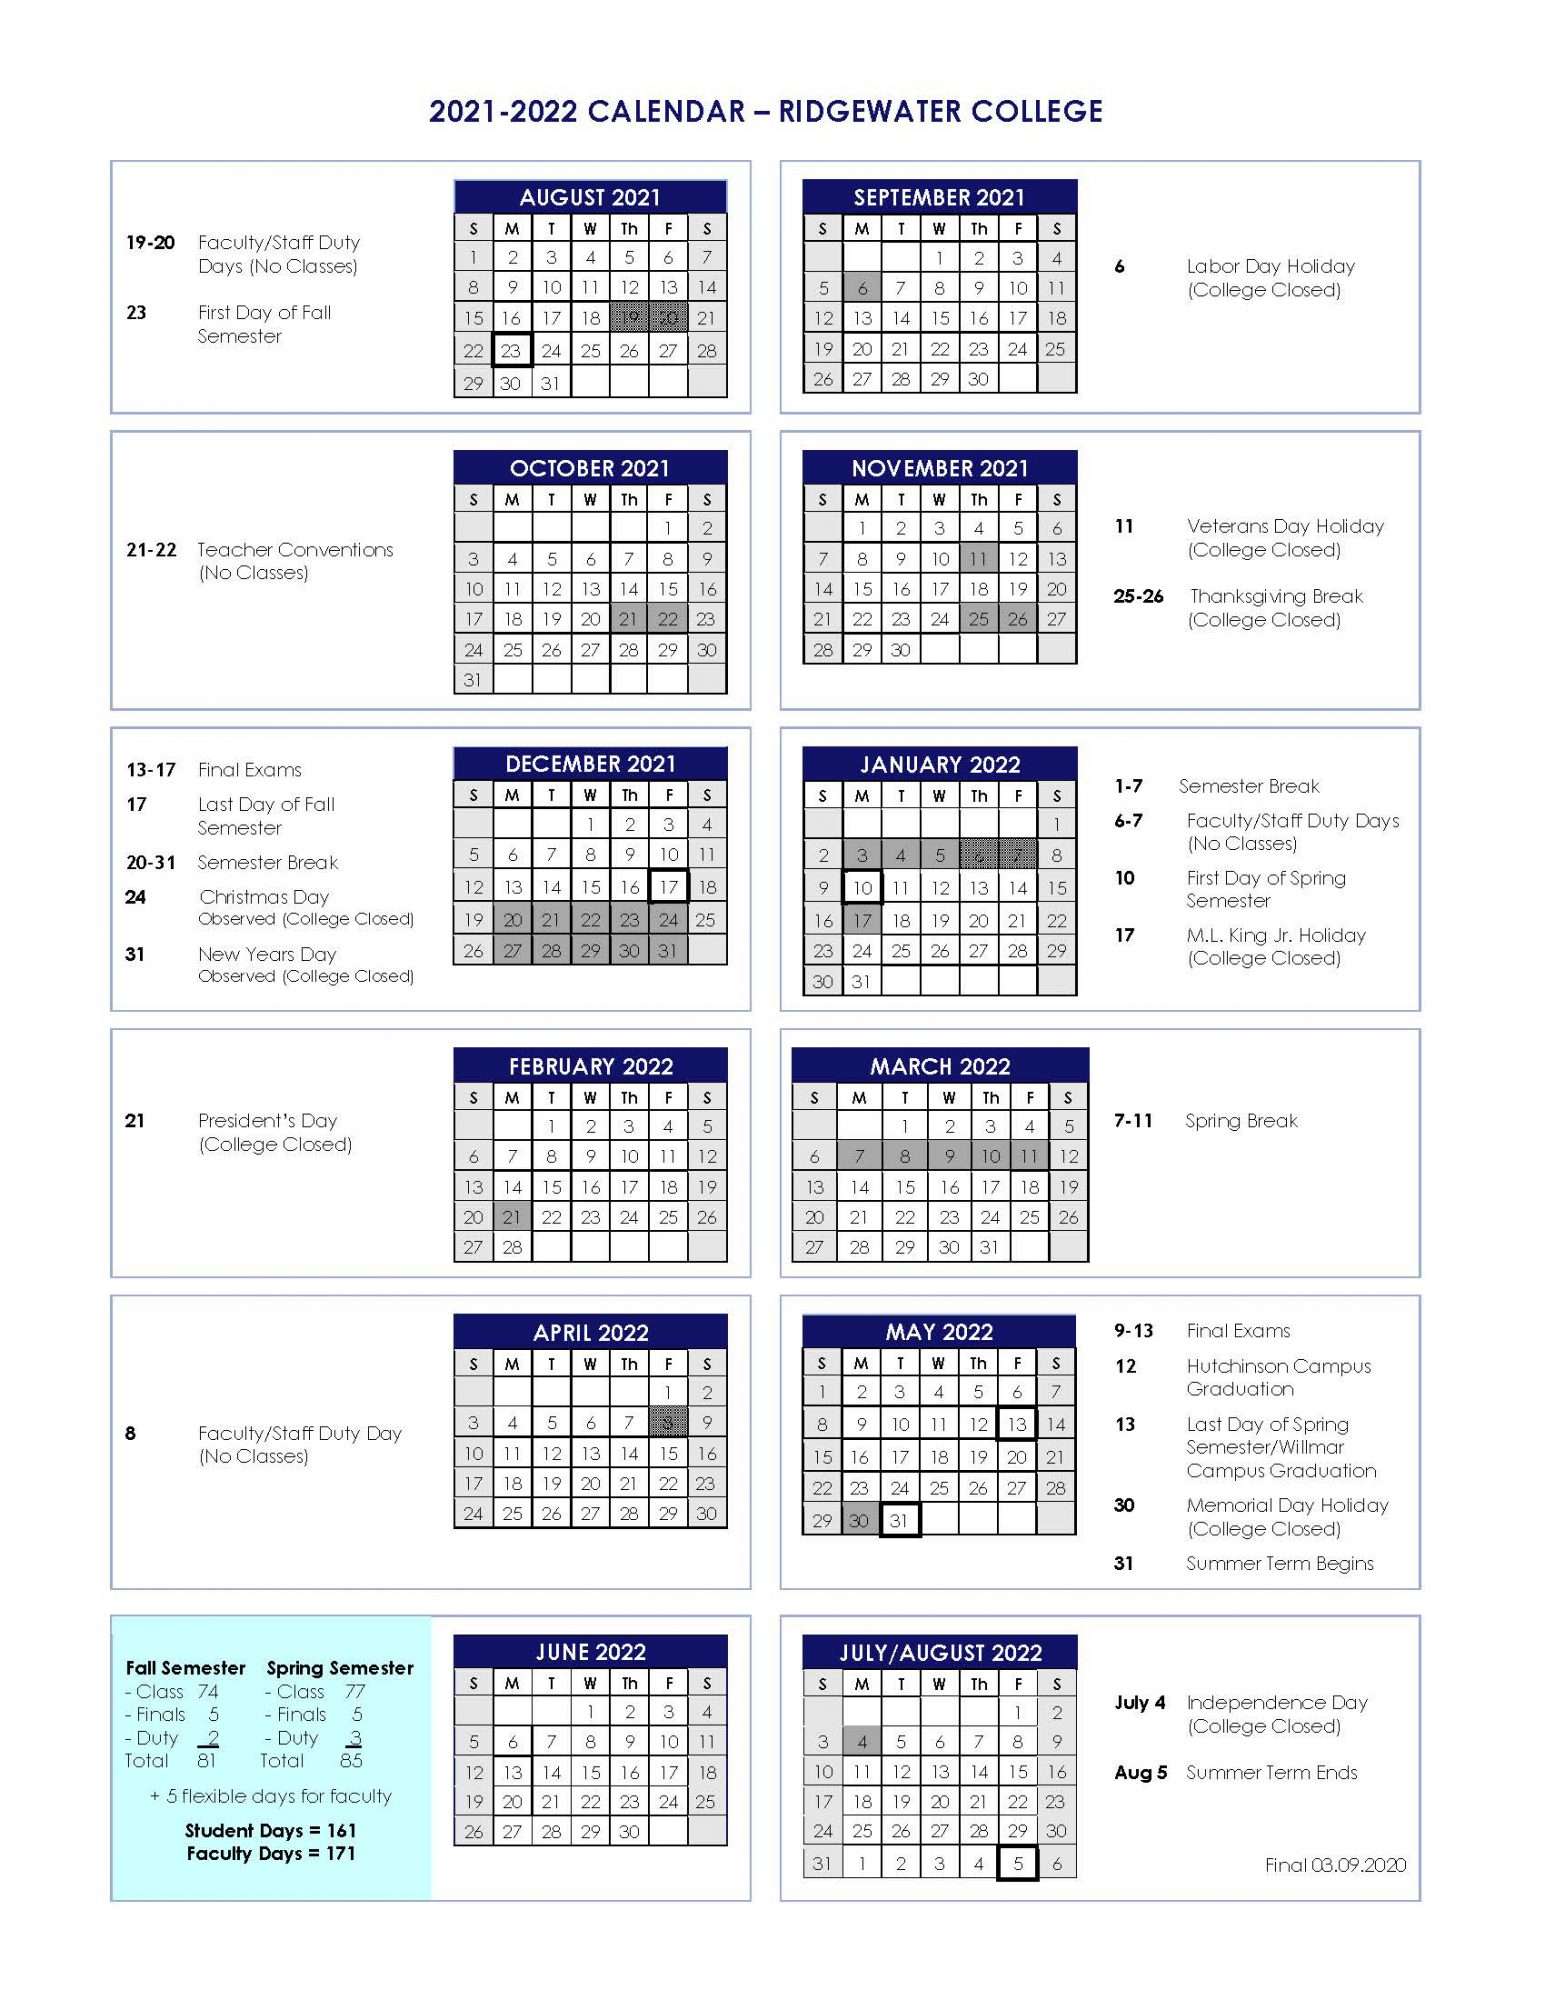 Fall 2022 Calendar